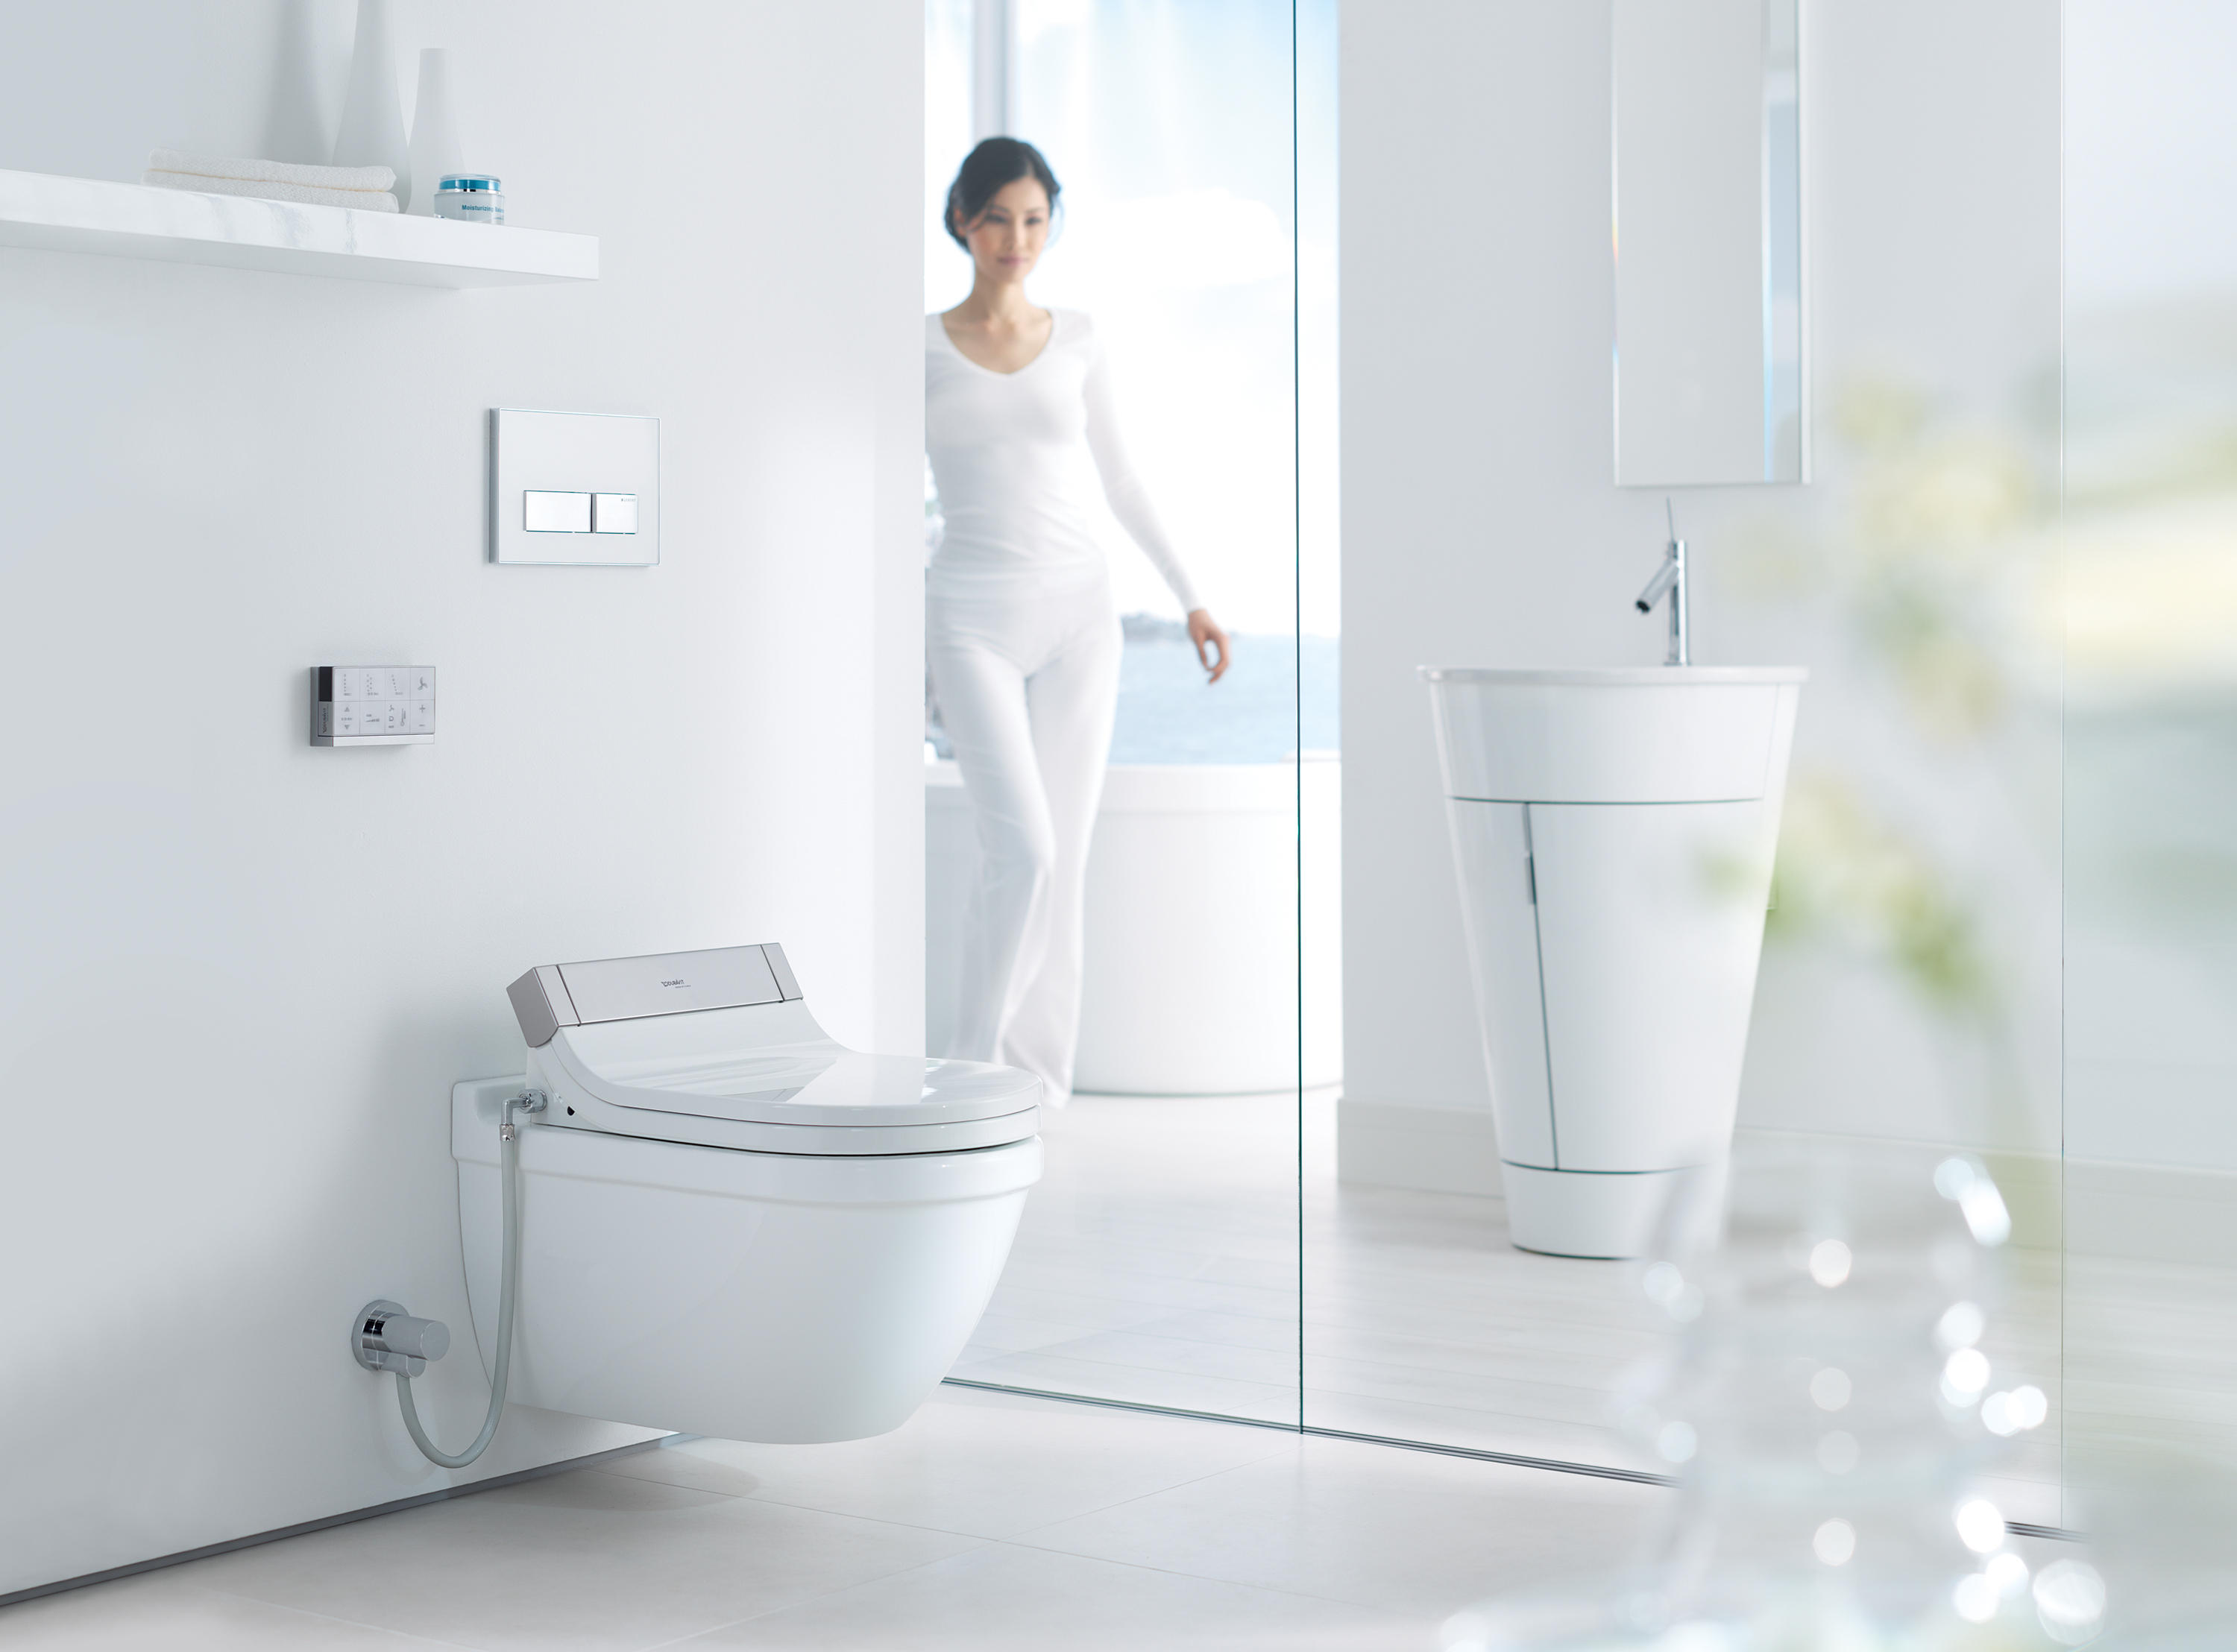 voorspelling Verstenen Beheren Starck 3 - wall-mounted toilet Compact | Architonic